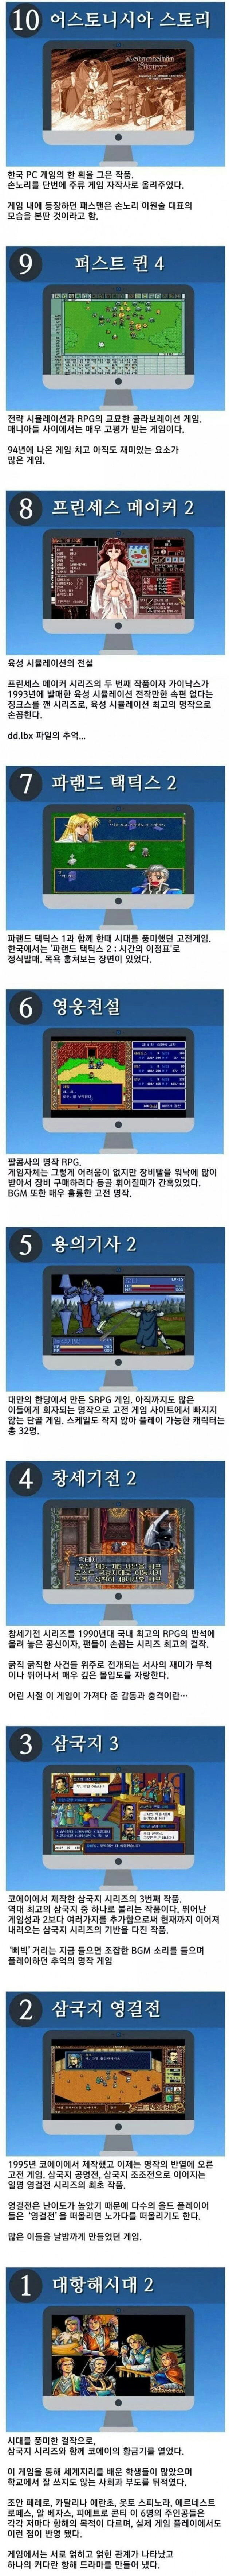 추억의 고전게임 TOP 10.jpg